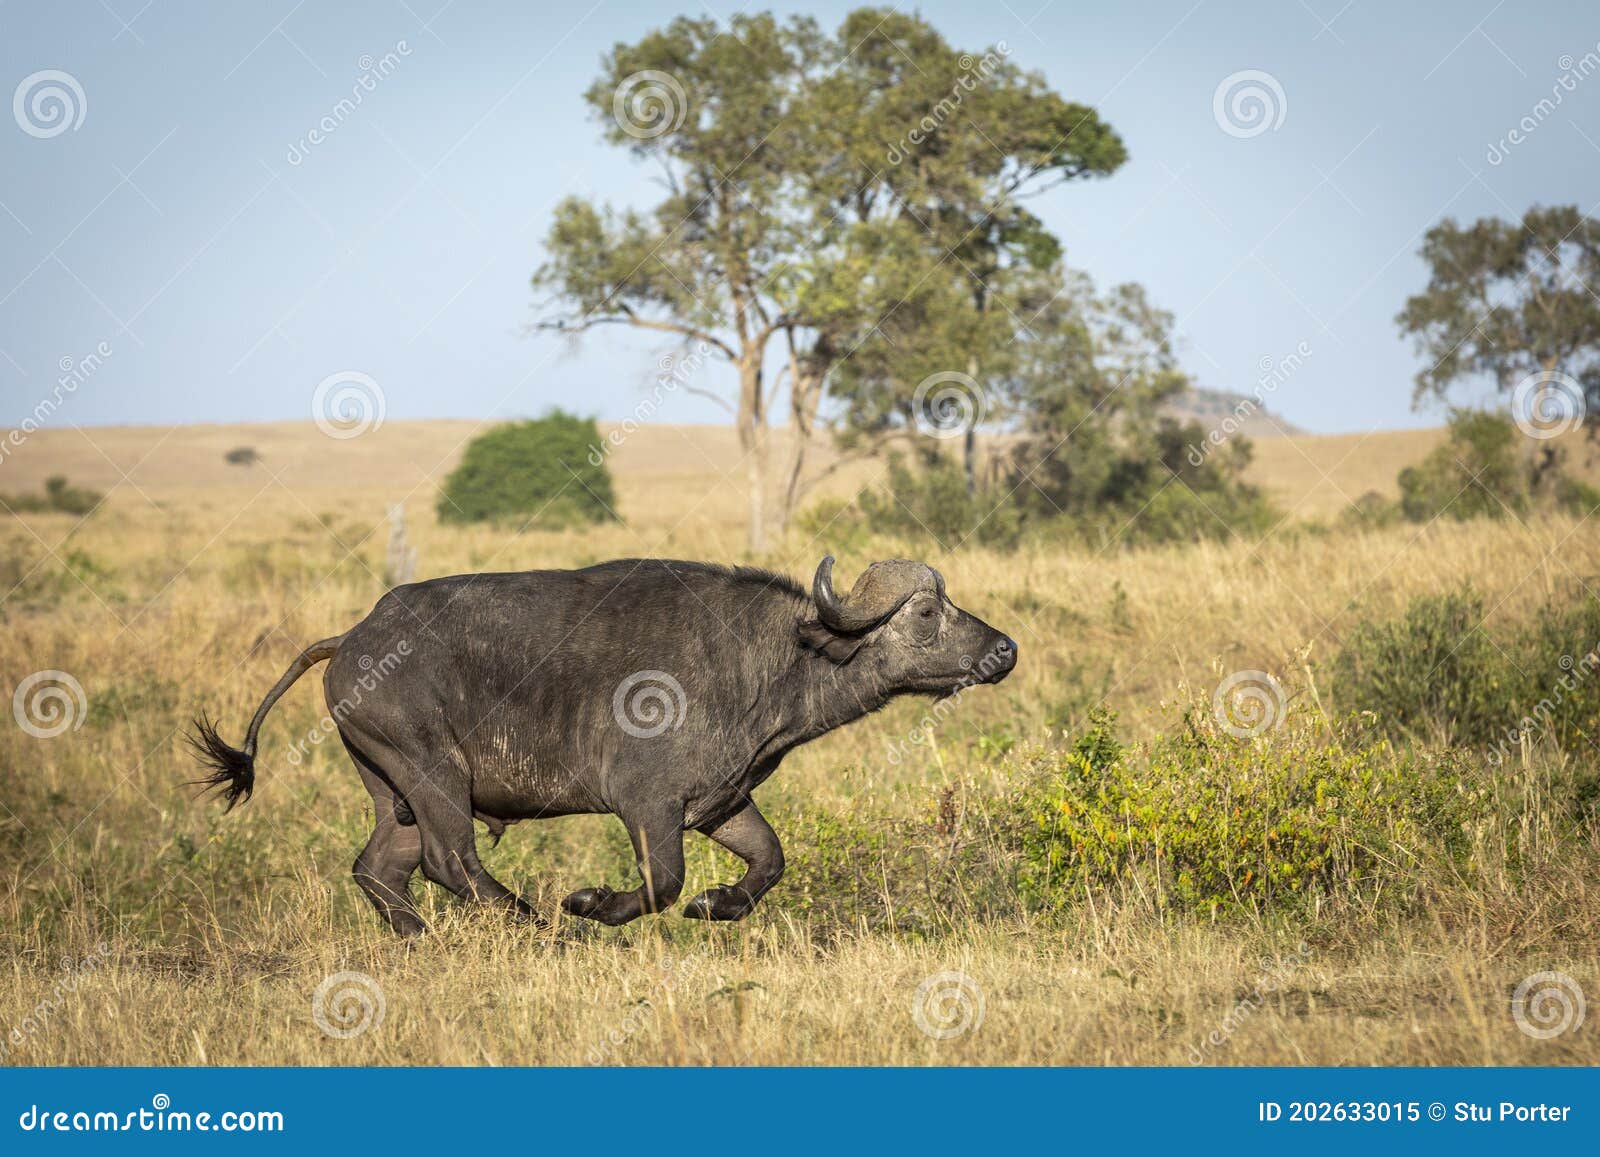 African Buffalo Bull Running in Masai Mara in Kenya Stock Image of bovine, male: 202633015